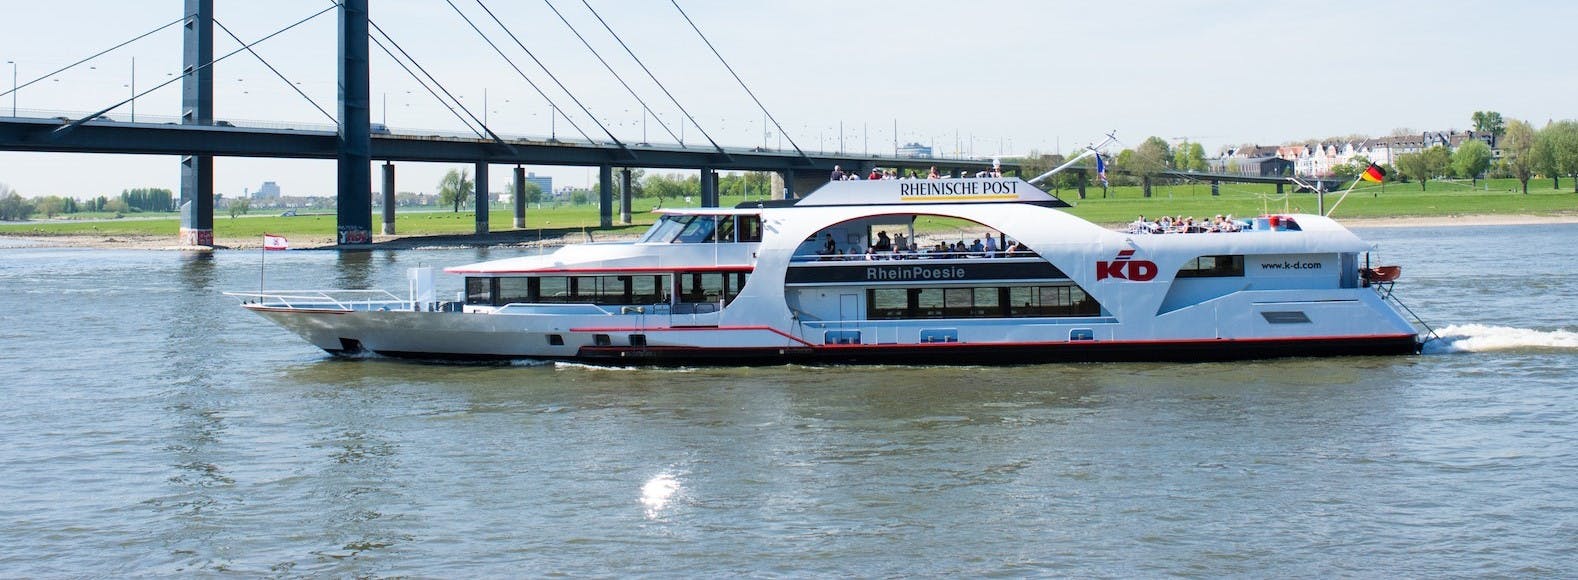 Cruzeiro de barco panorâmico em Düsseldorf com guia de áudio